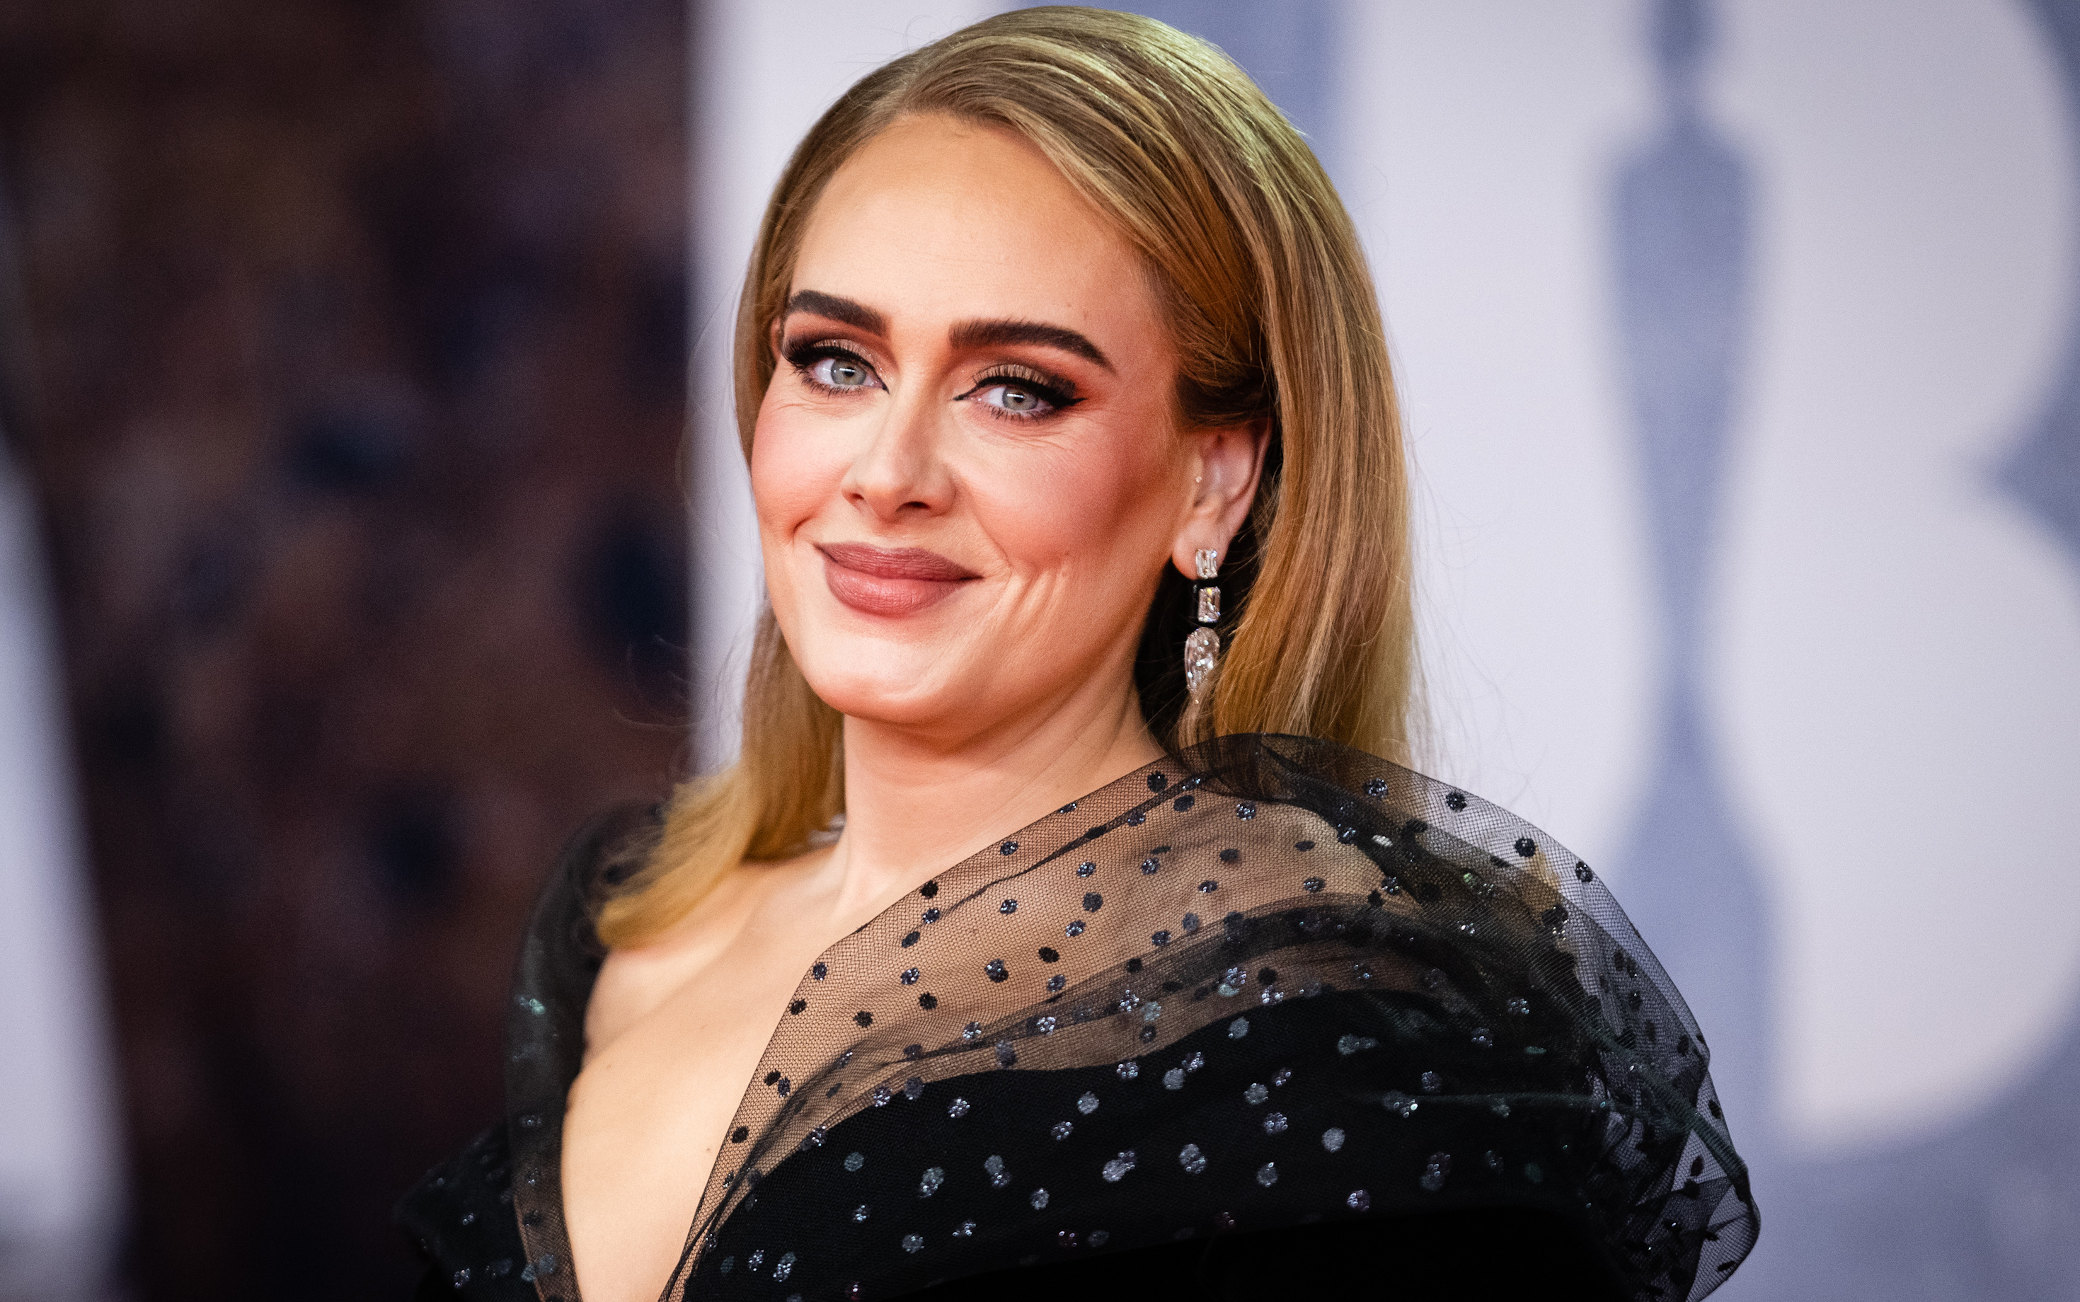 La ridicola accusa ad Adele: si dichiara 'orgogliosa di essere donna' e le danno della transfobica